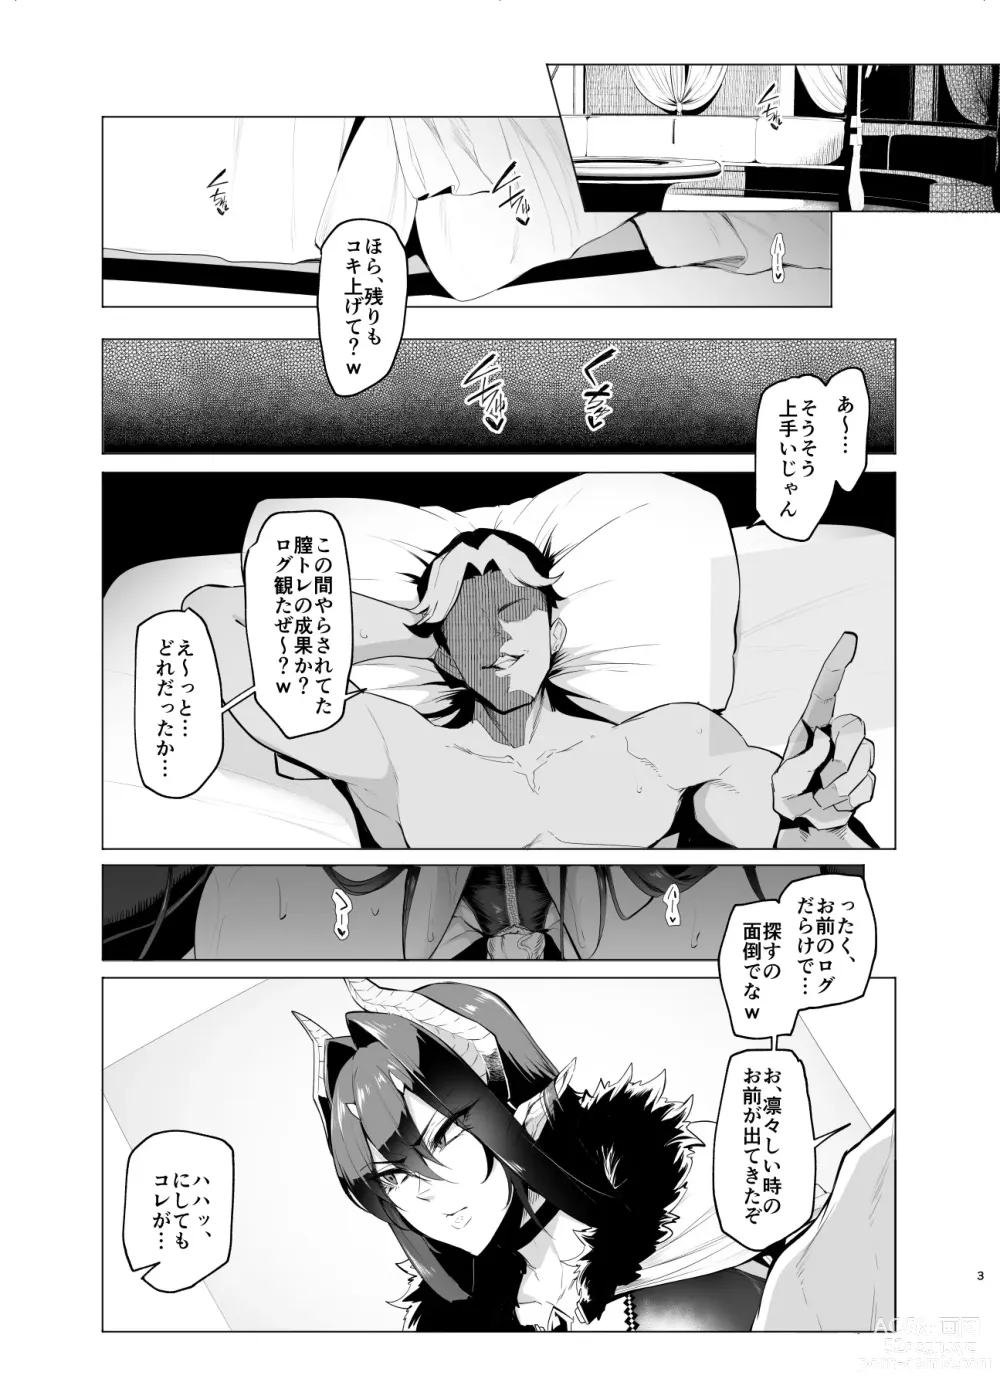 Page 2 of doujinshi Mesu Gacha III Preview Ban